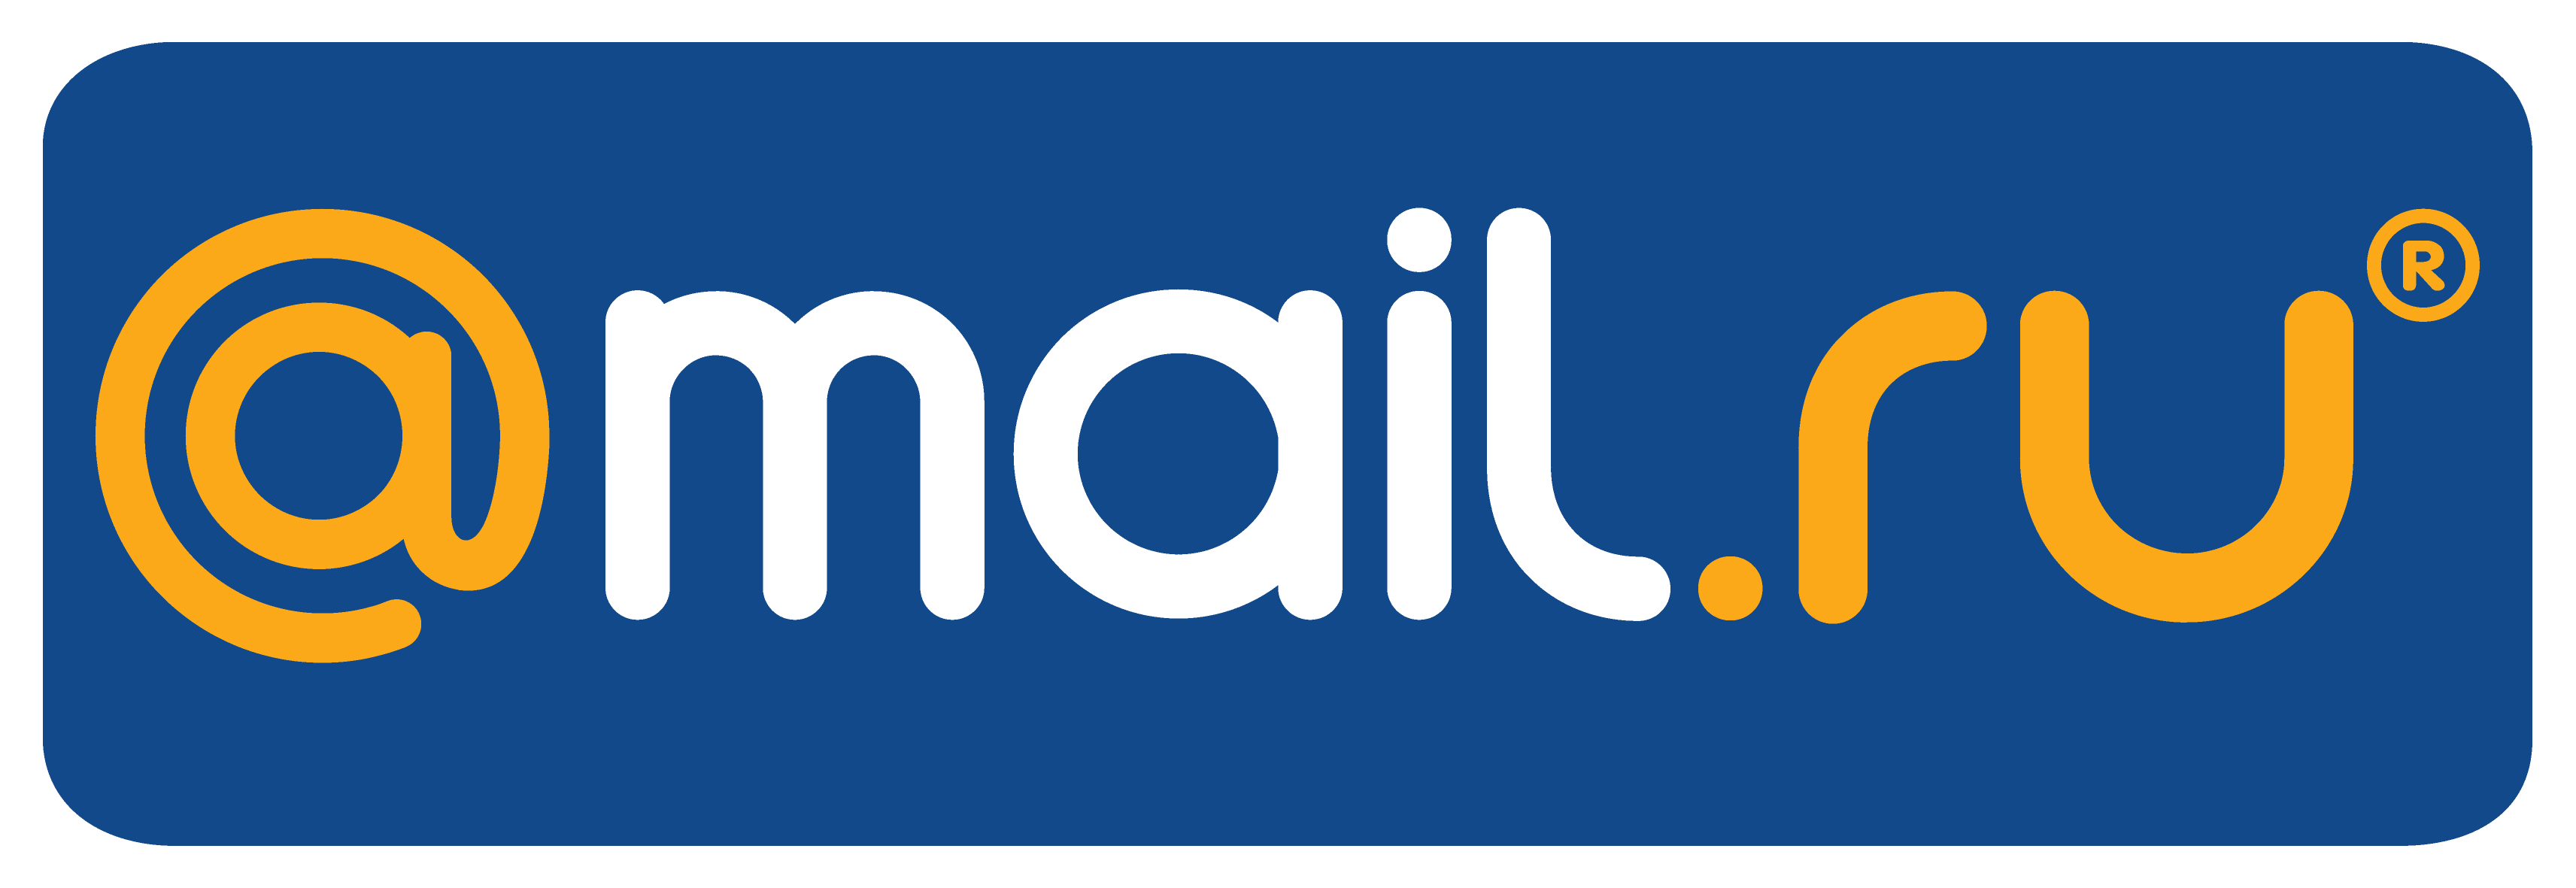 Dlyakojida ru. Mail. Mail.ru лого. Почта майл. Логотип мейл ру.